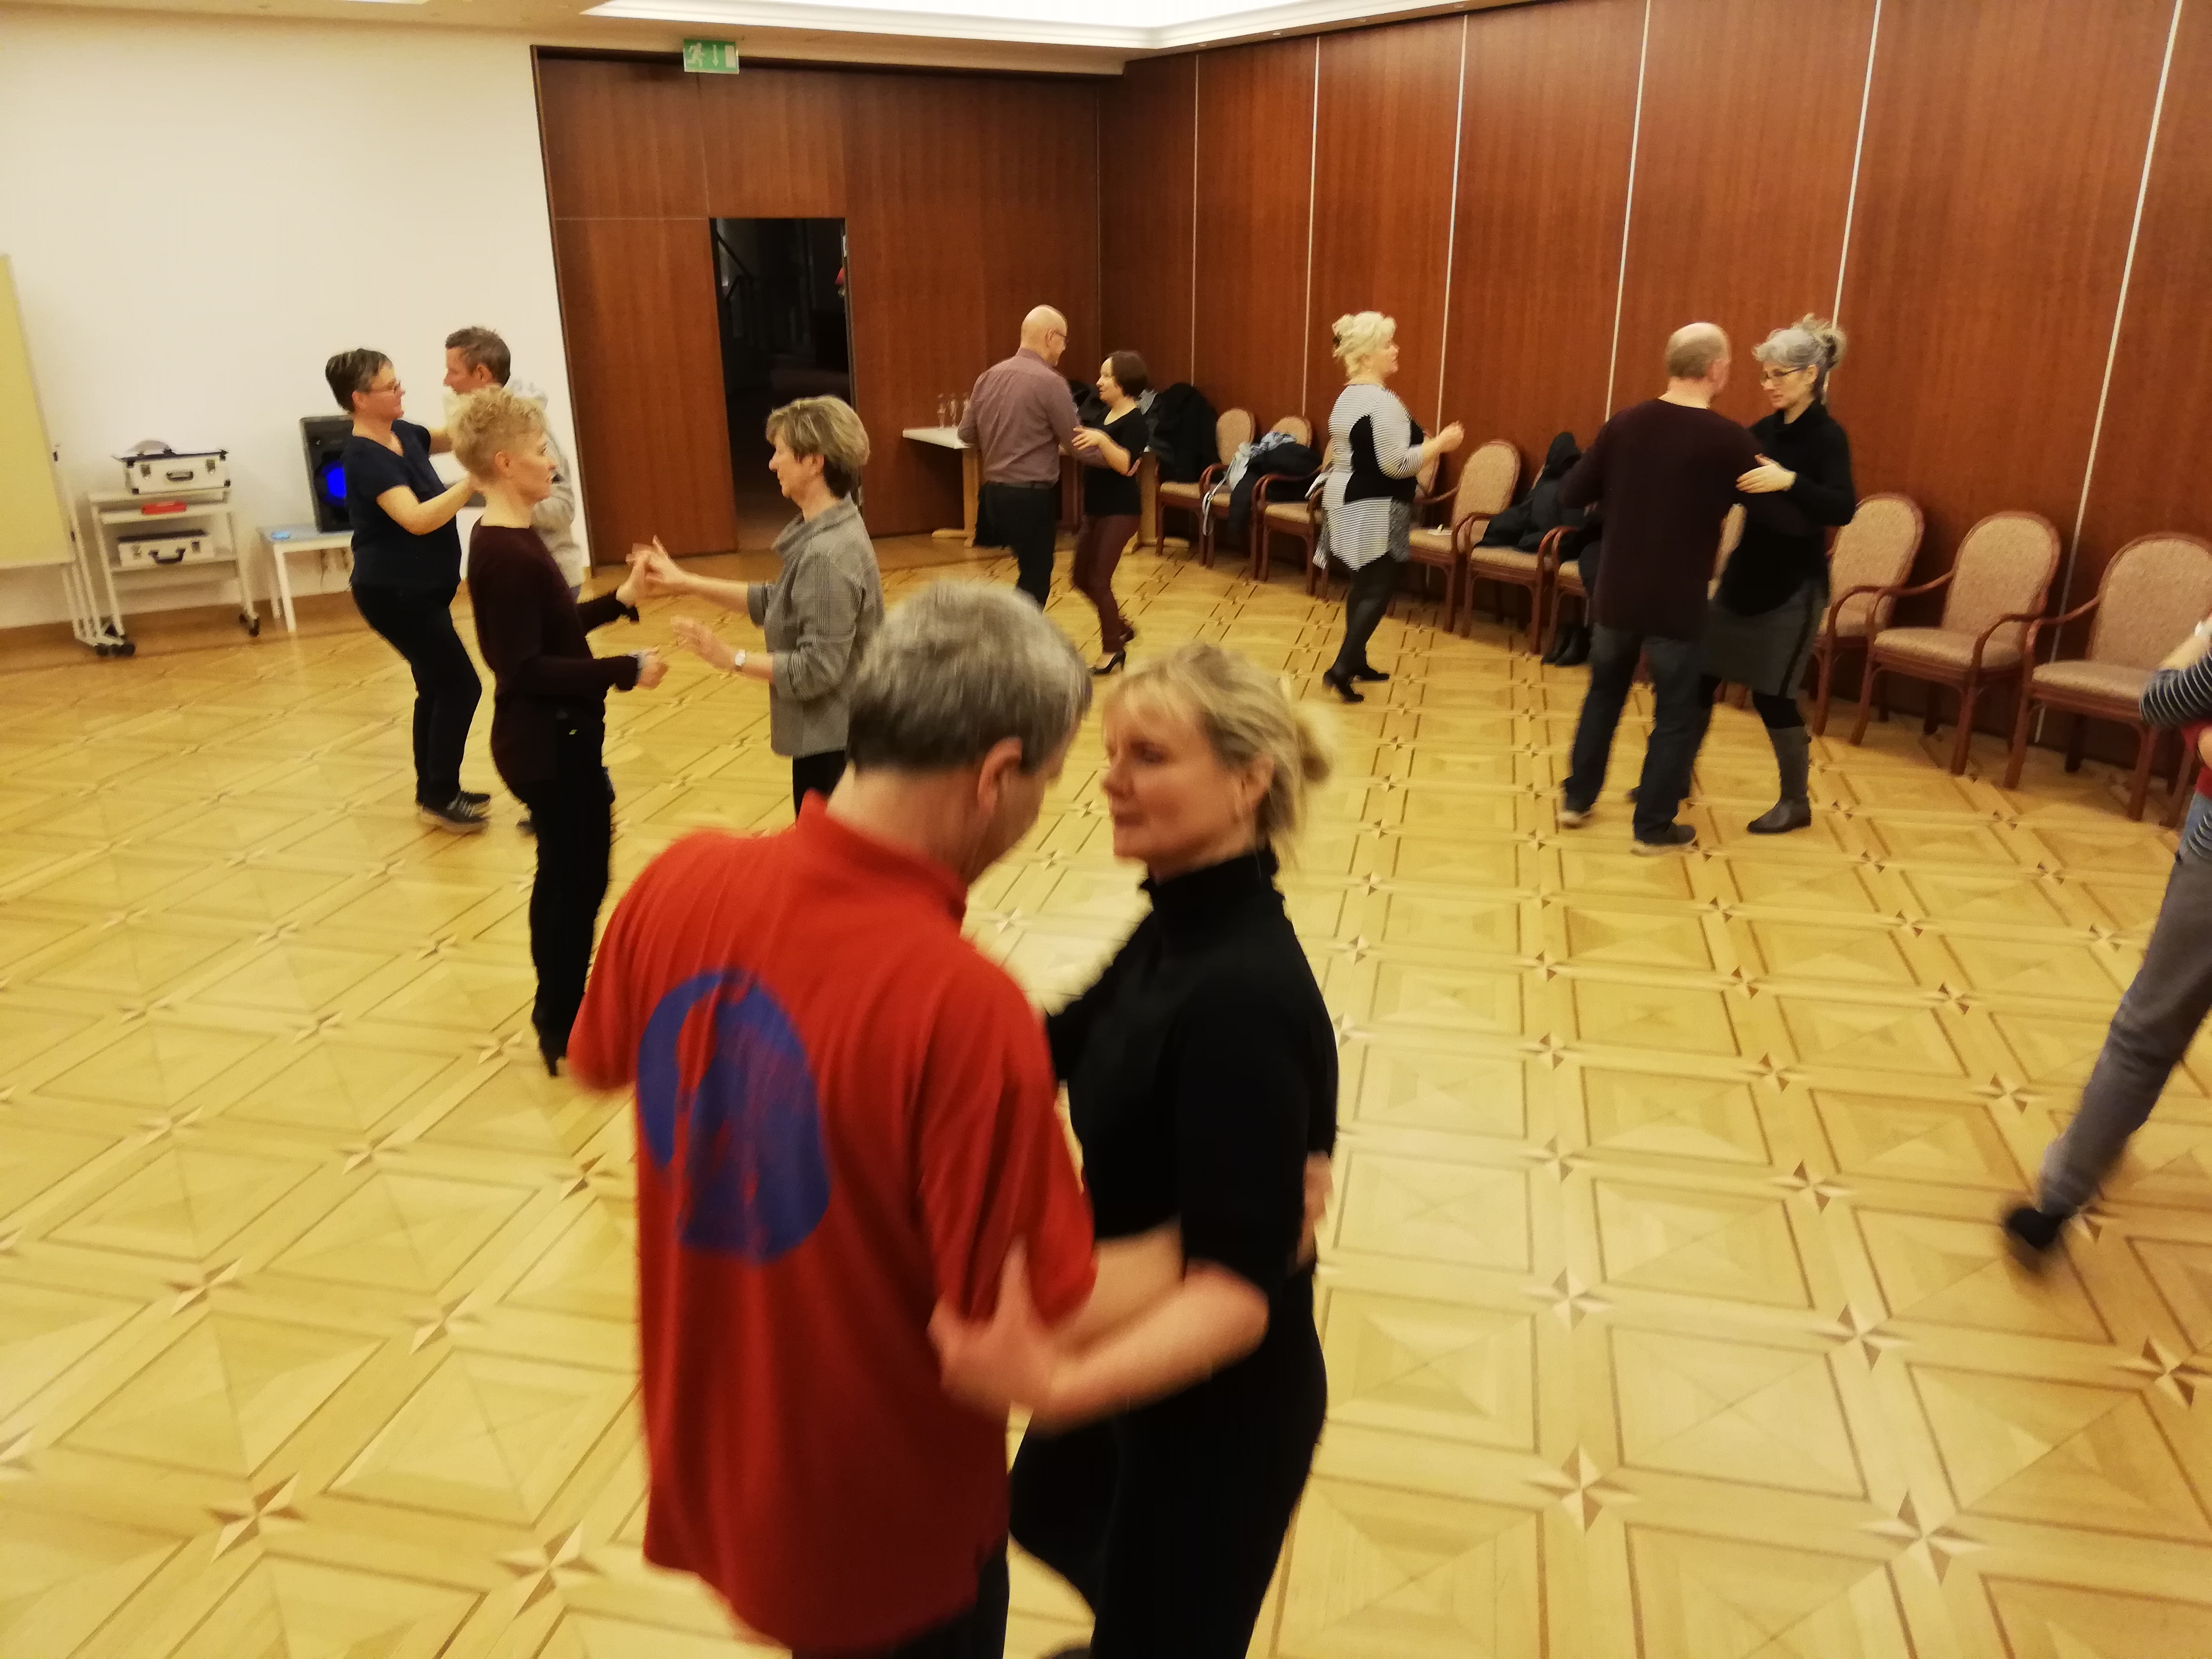 Üben des Walzer-Grundschritts in der Offenen Tanzstunde im Parkhotel Am Glienberg in Zinnowitz